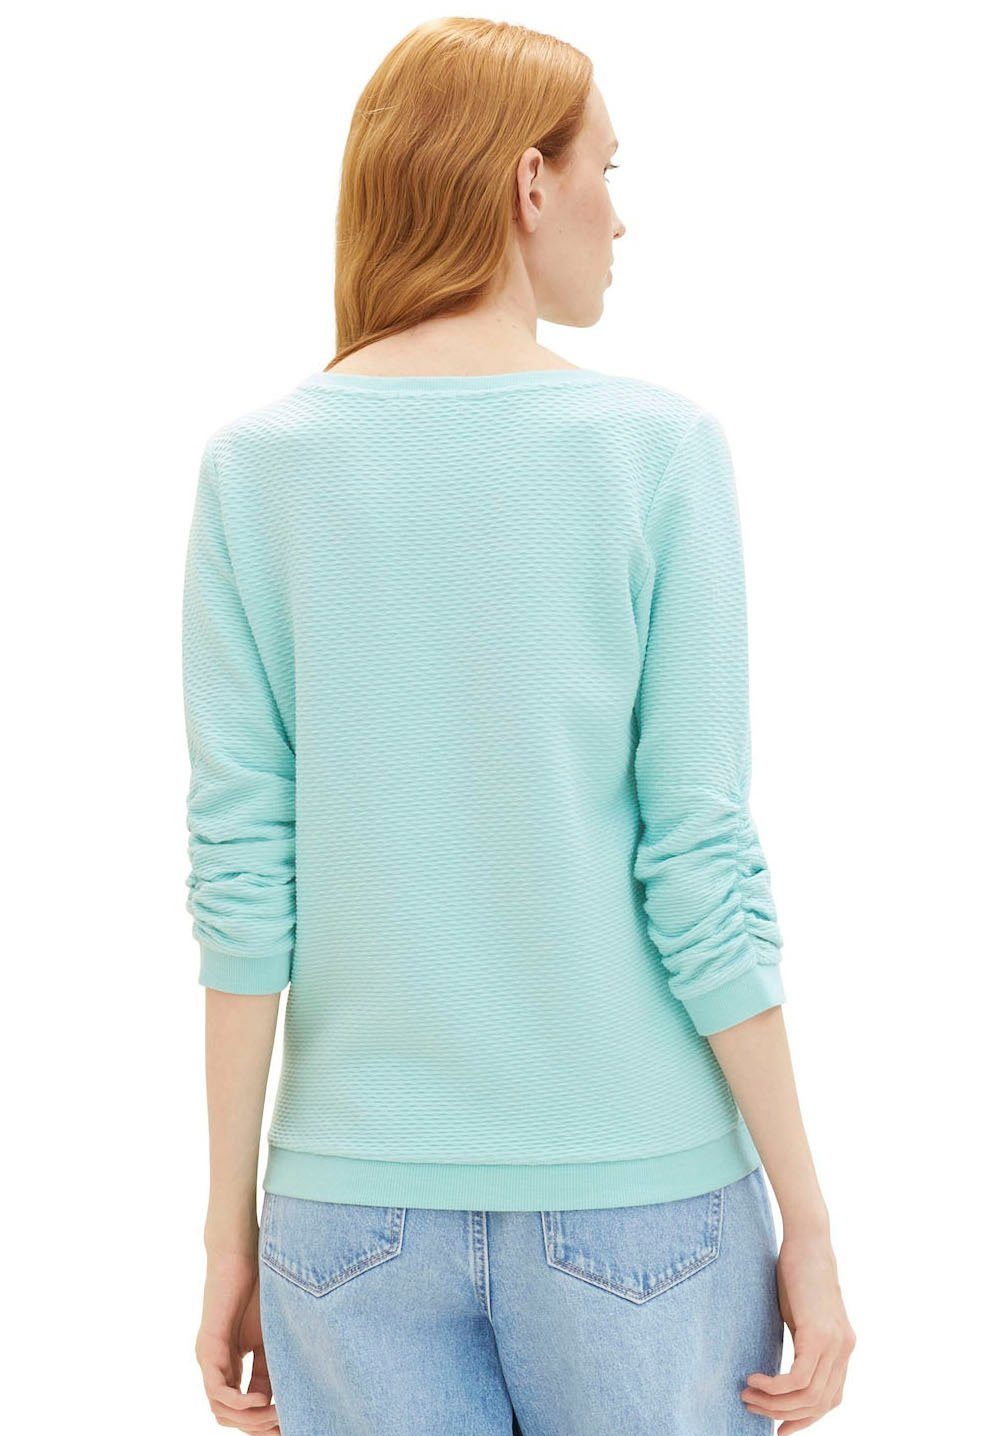 Denim pastel Materialoberfläche TOM Sweatshirt besonderer turquoise mit TAILOR